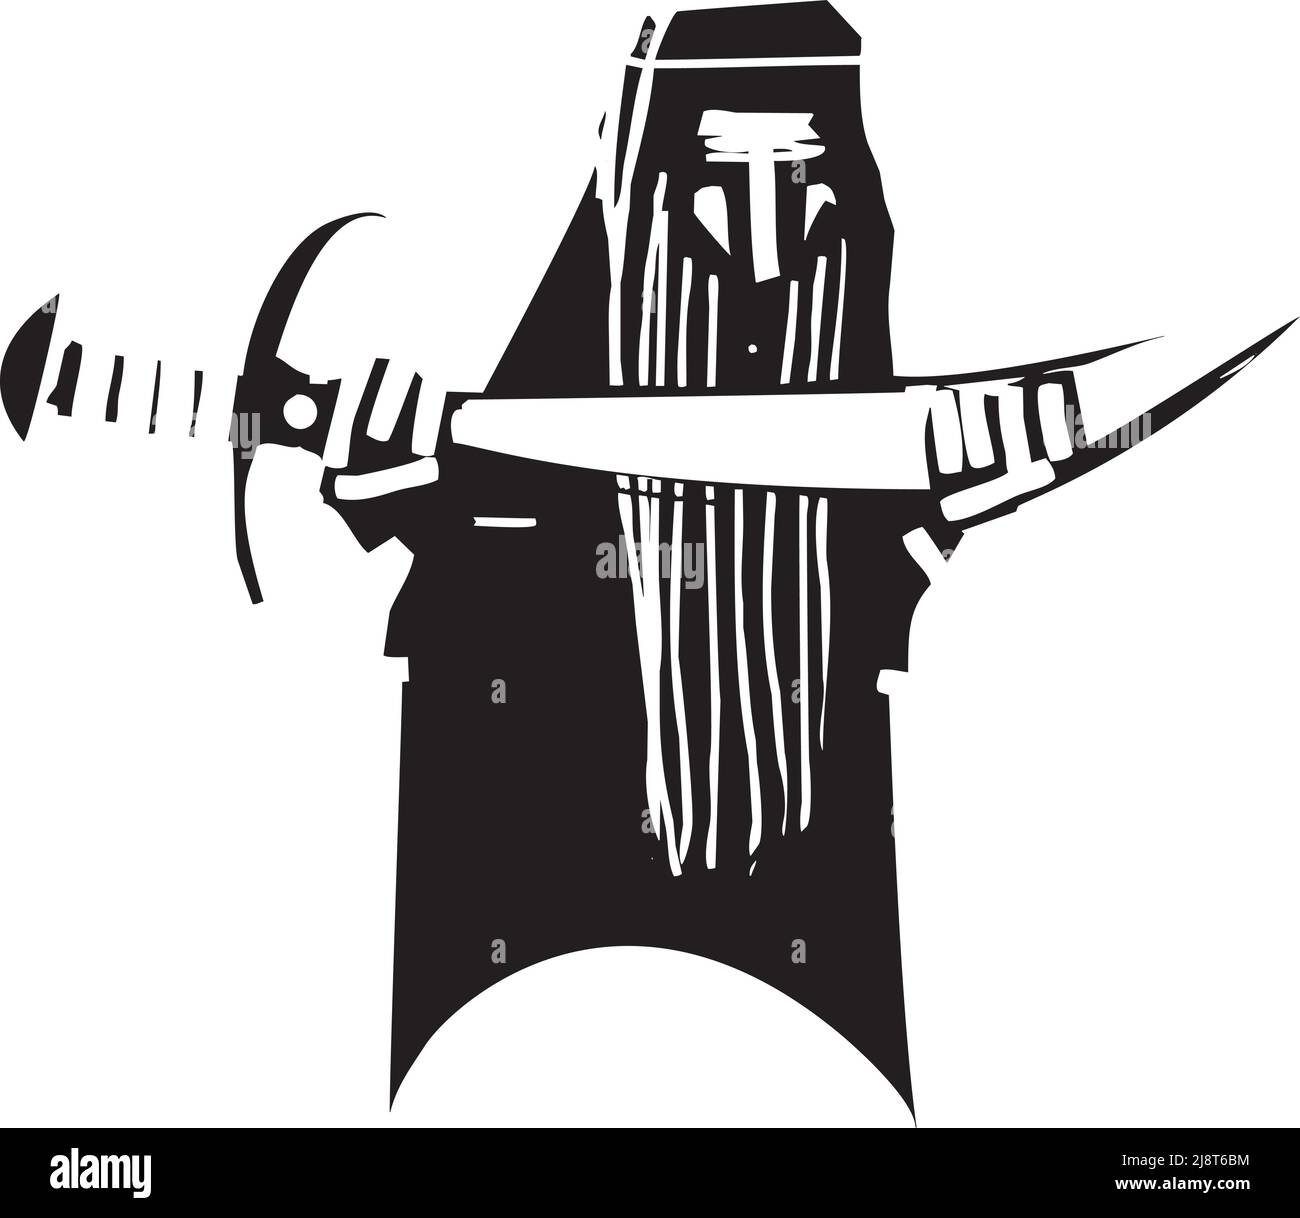 Enana mítica de estilo expresionista medio oriental con espada scimititar Ilustración del Vector